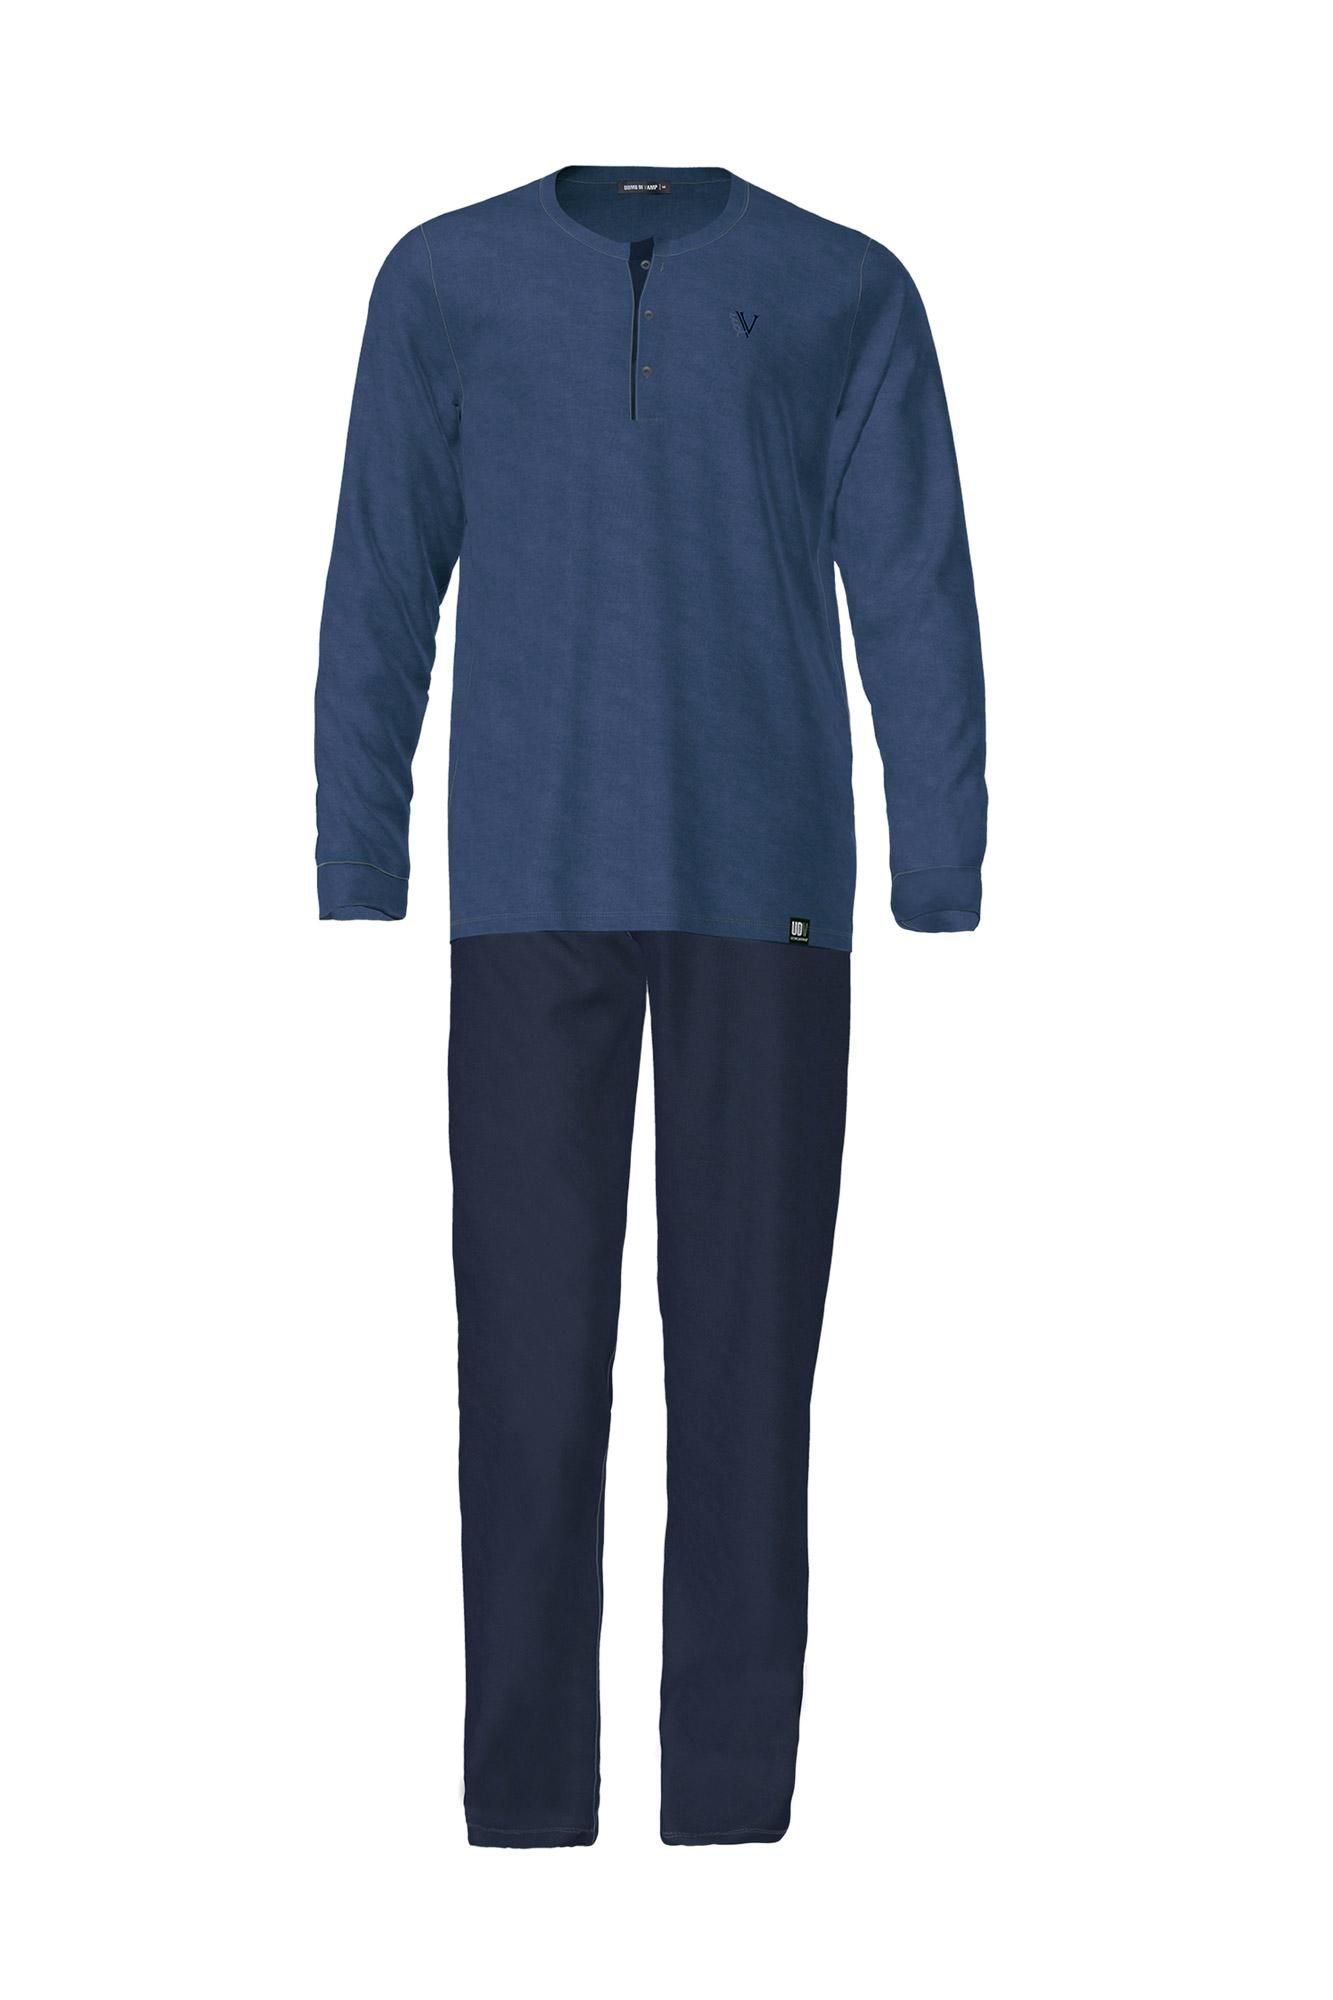 Men’s Pyjamas with Button Placket Plus Size